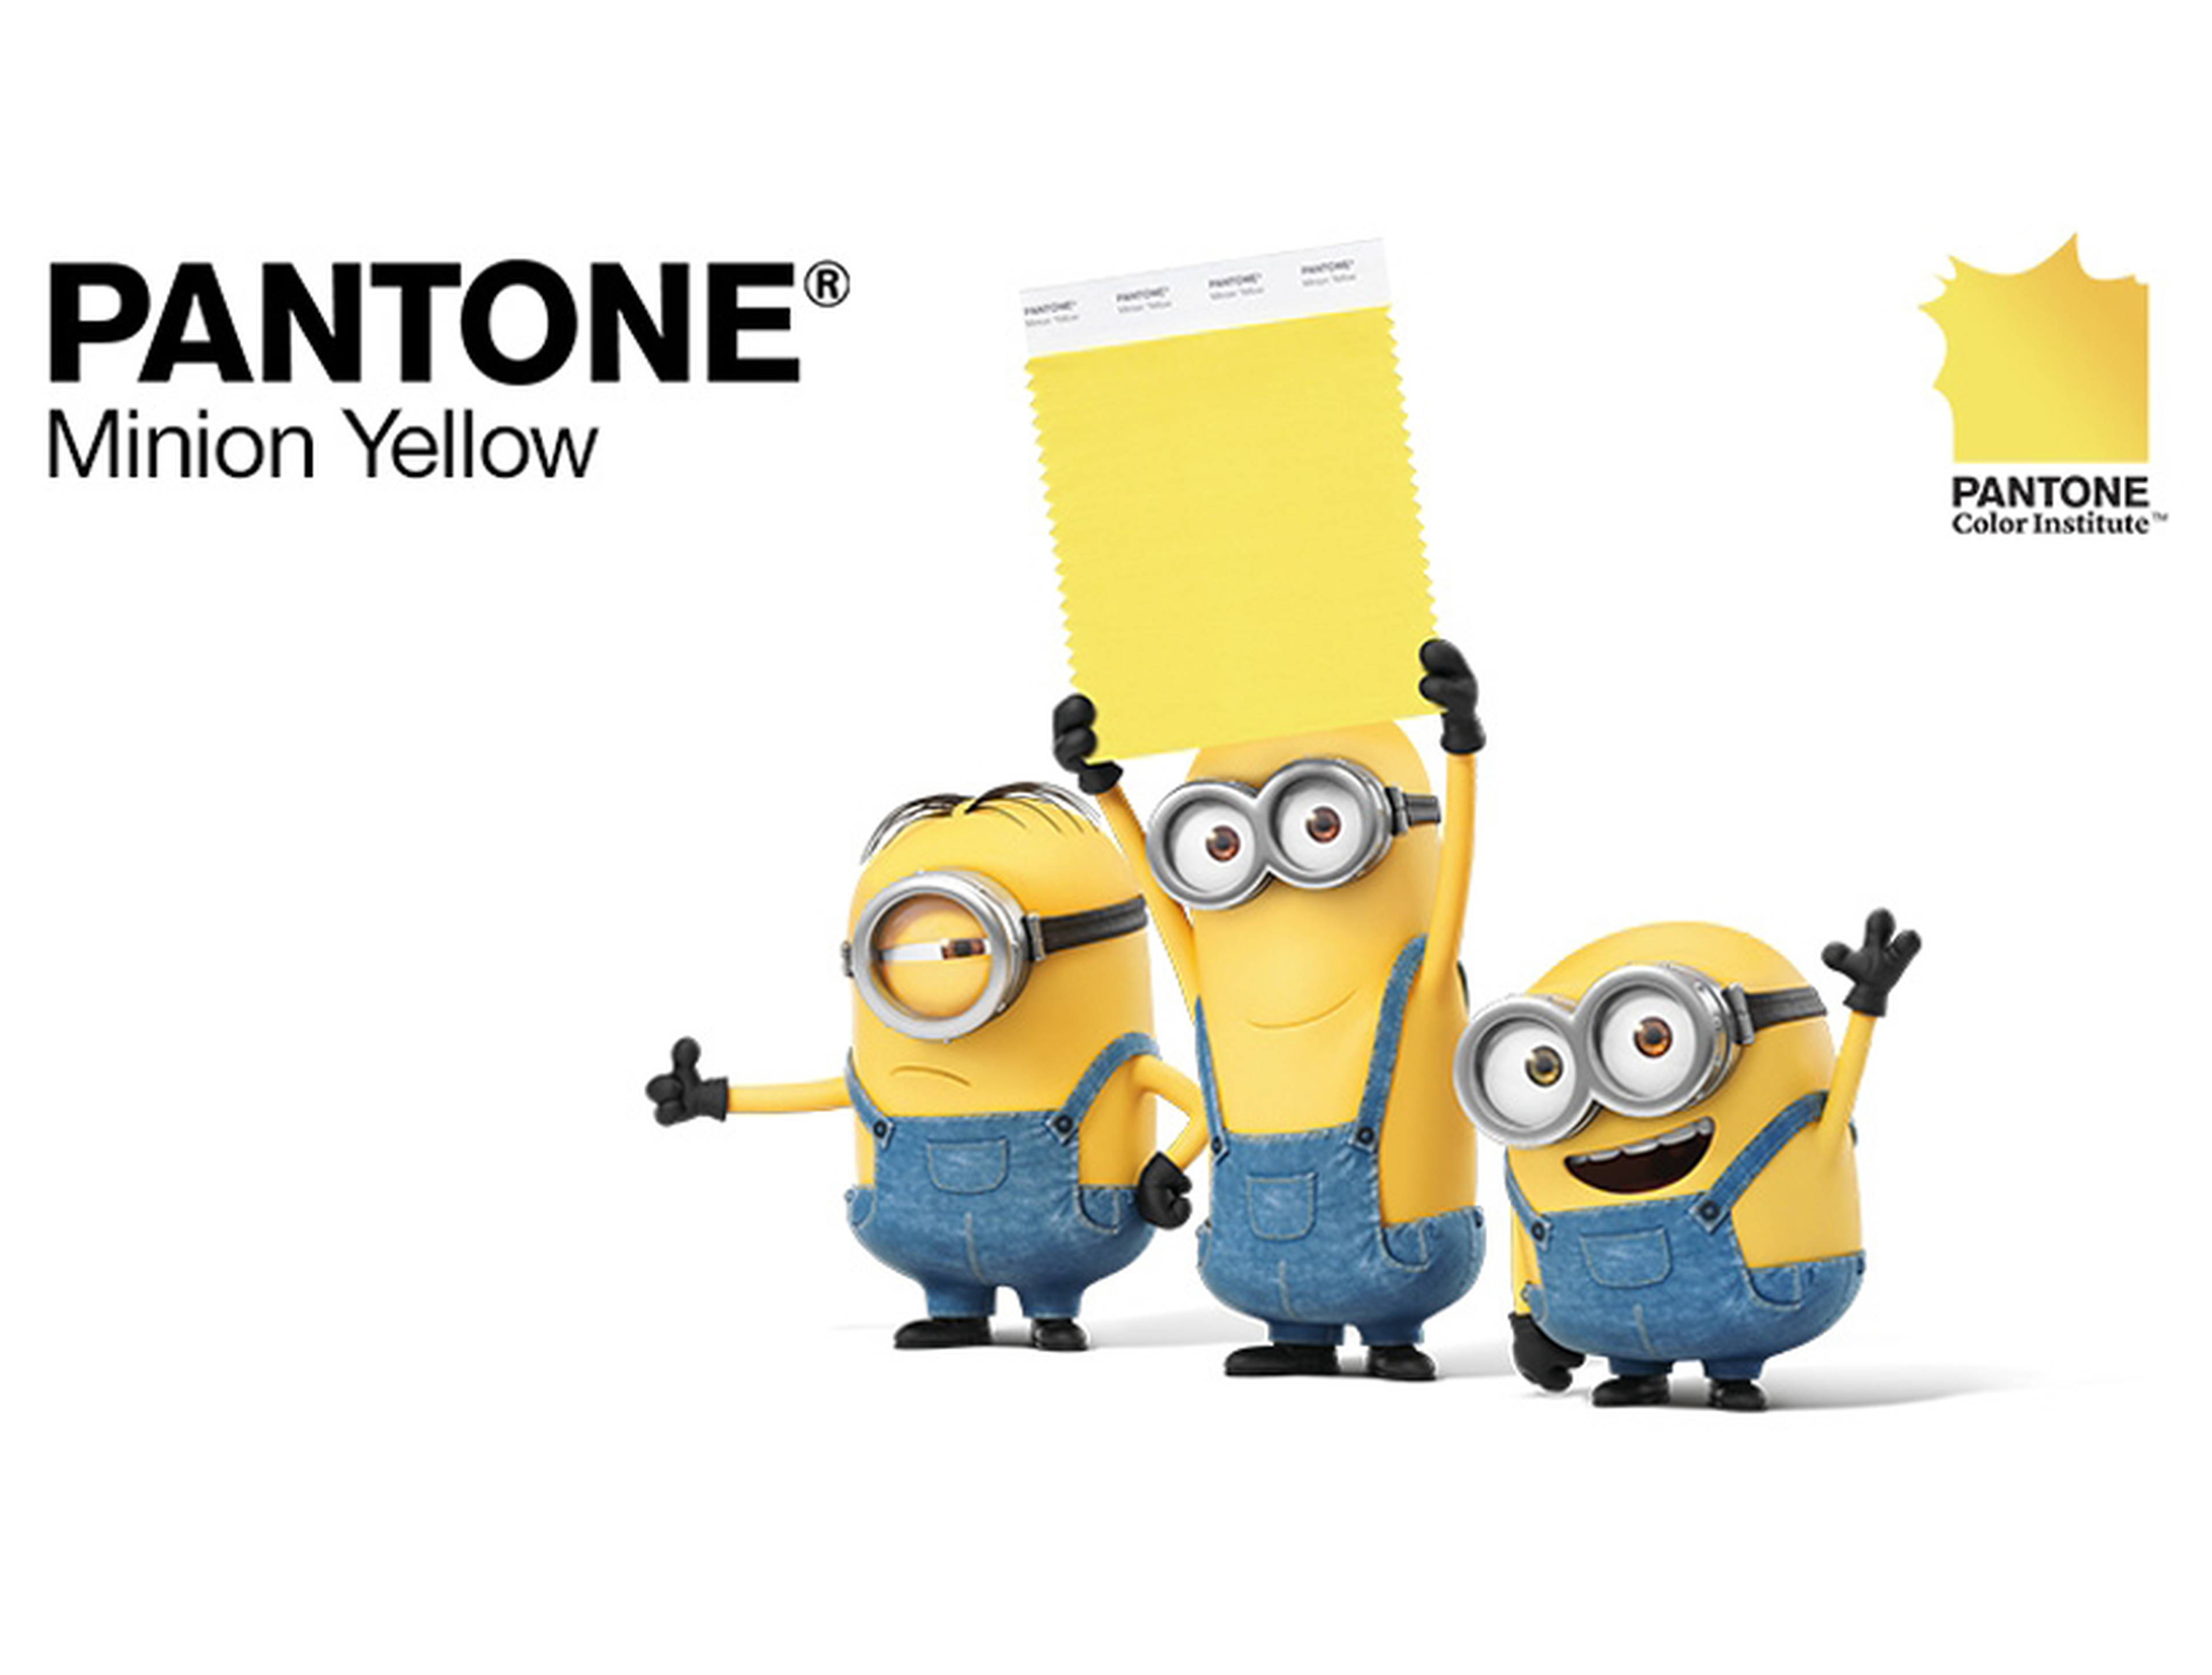 Pantone ha creado un nuevo color: el amarillo Minion